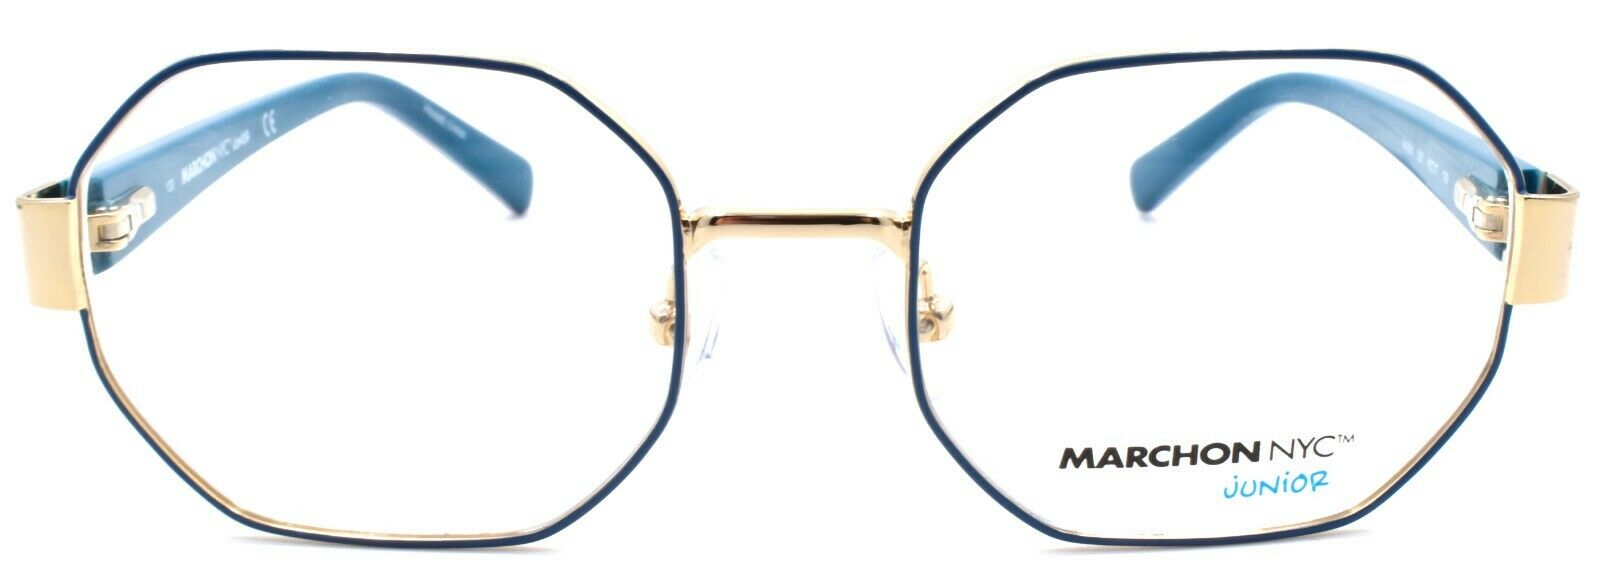 2-Marchon M-7001 320 Kids Girls Eyeglasses Frames Octagon 46-17-130 Gold / Teal-886895430319-IKSpecs